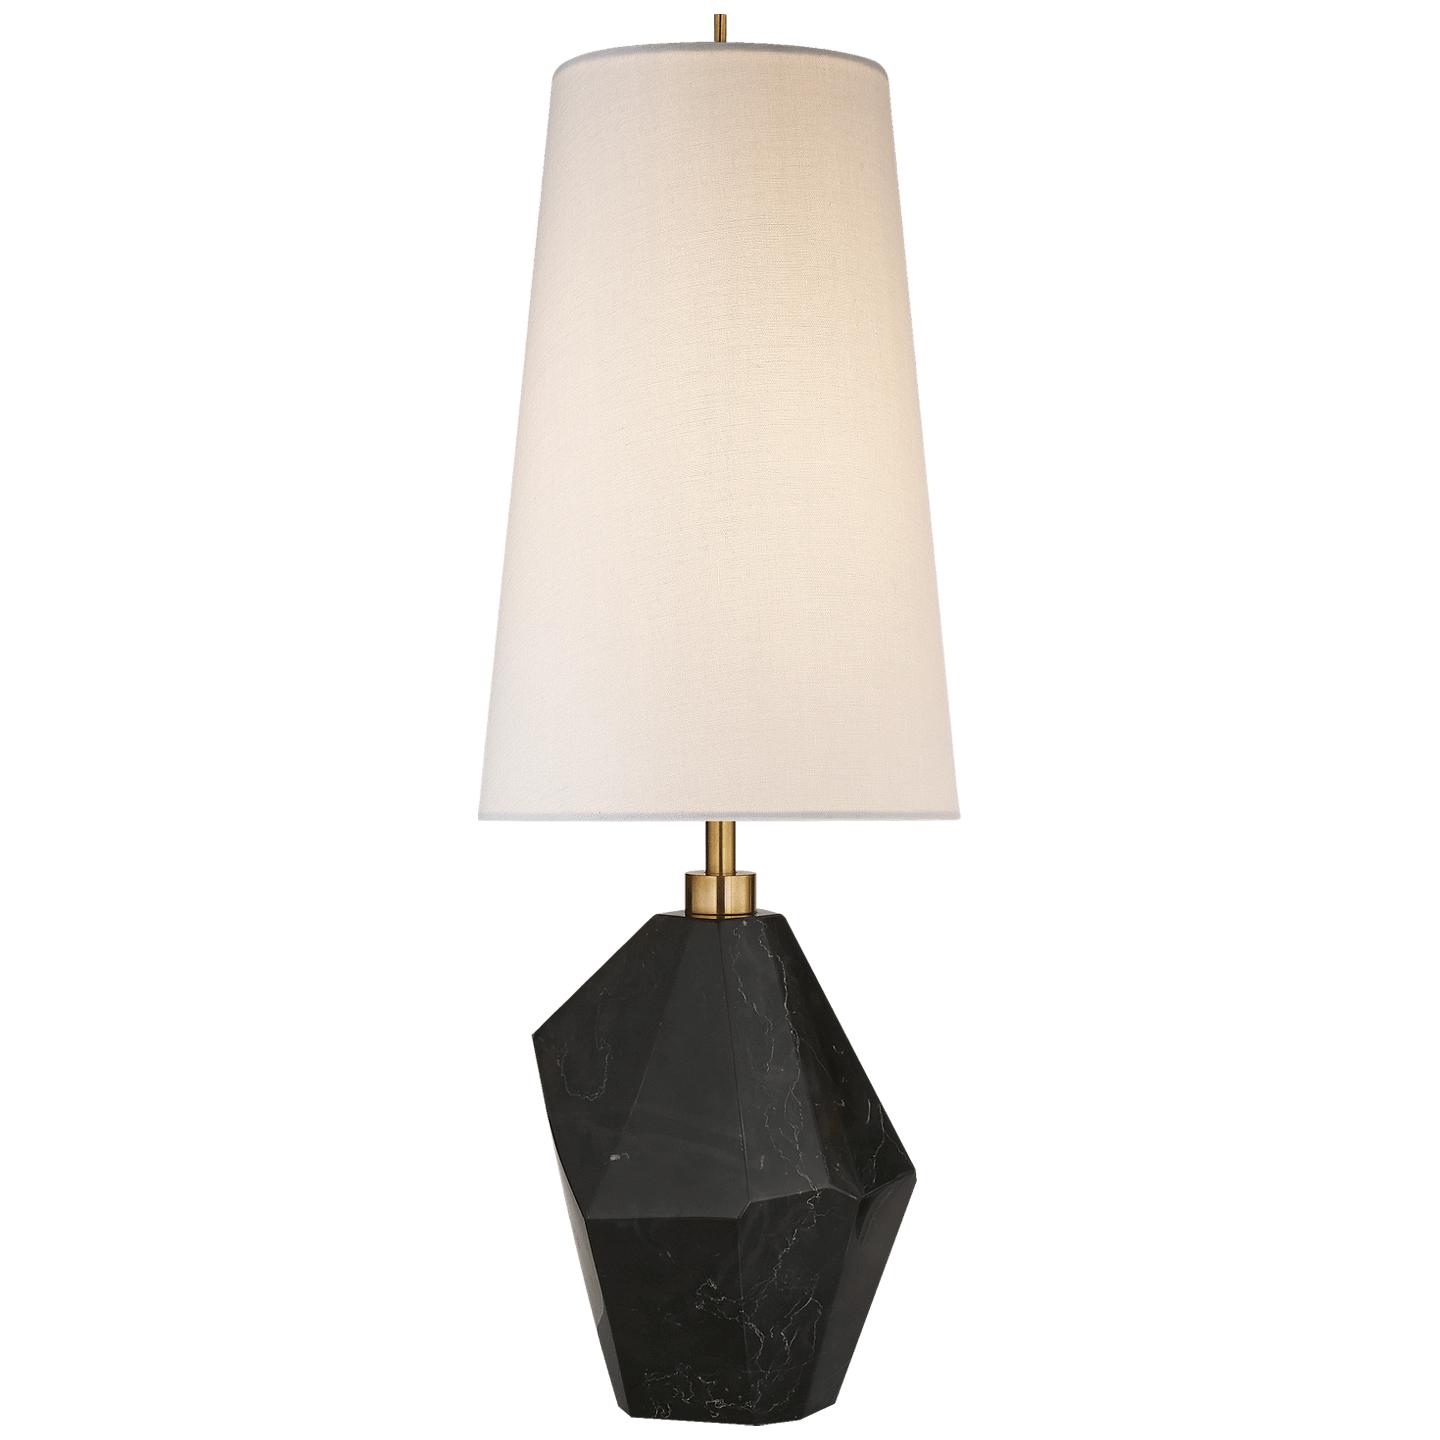 Купить Настольная лампа Halcyon Accent Table Lamp в интернет-магазине roooms.ru